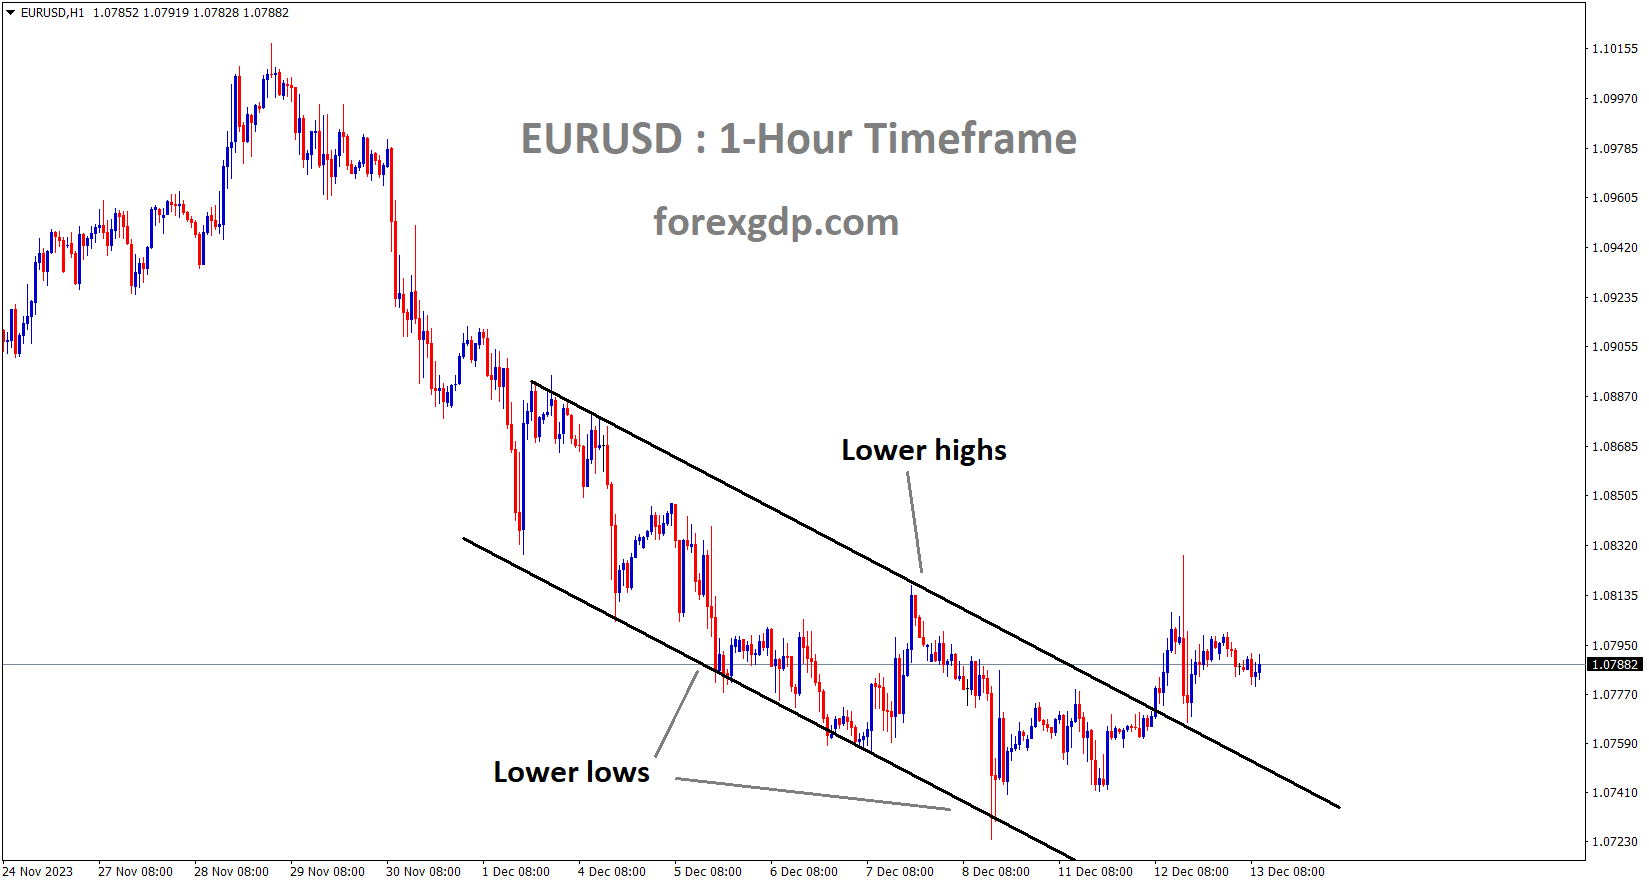 EURUSD has broken the Descending channel in upside